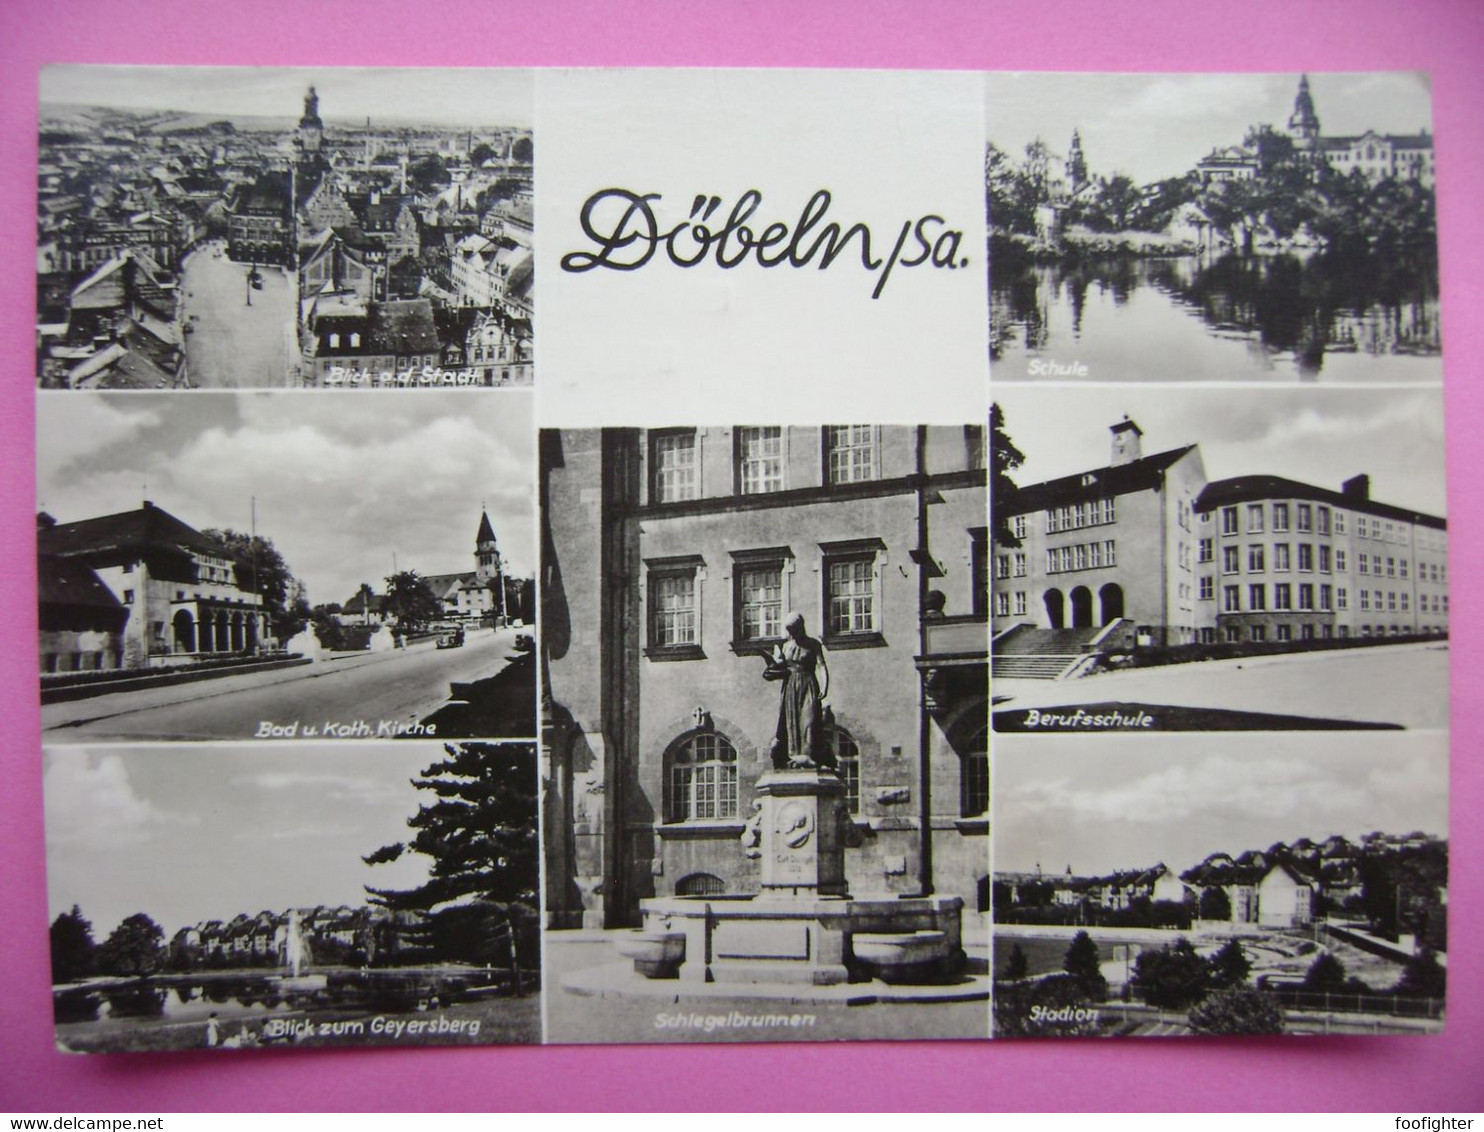 Döebeln Saxony - Bad U. Kath. Kirche, Geyersberg, Schule, Stadion, Berufsschule, Schlegelbrunnen - Posted 1966 - Doebeln